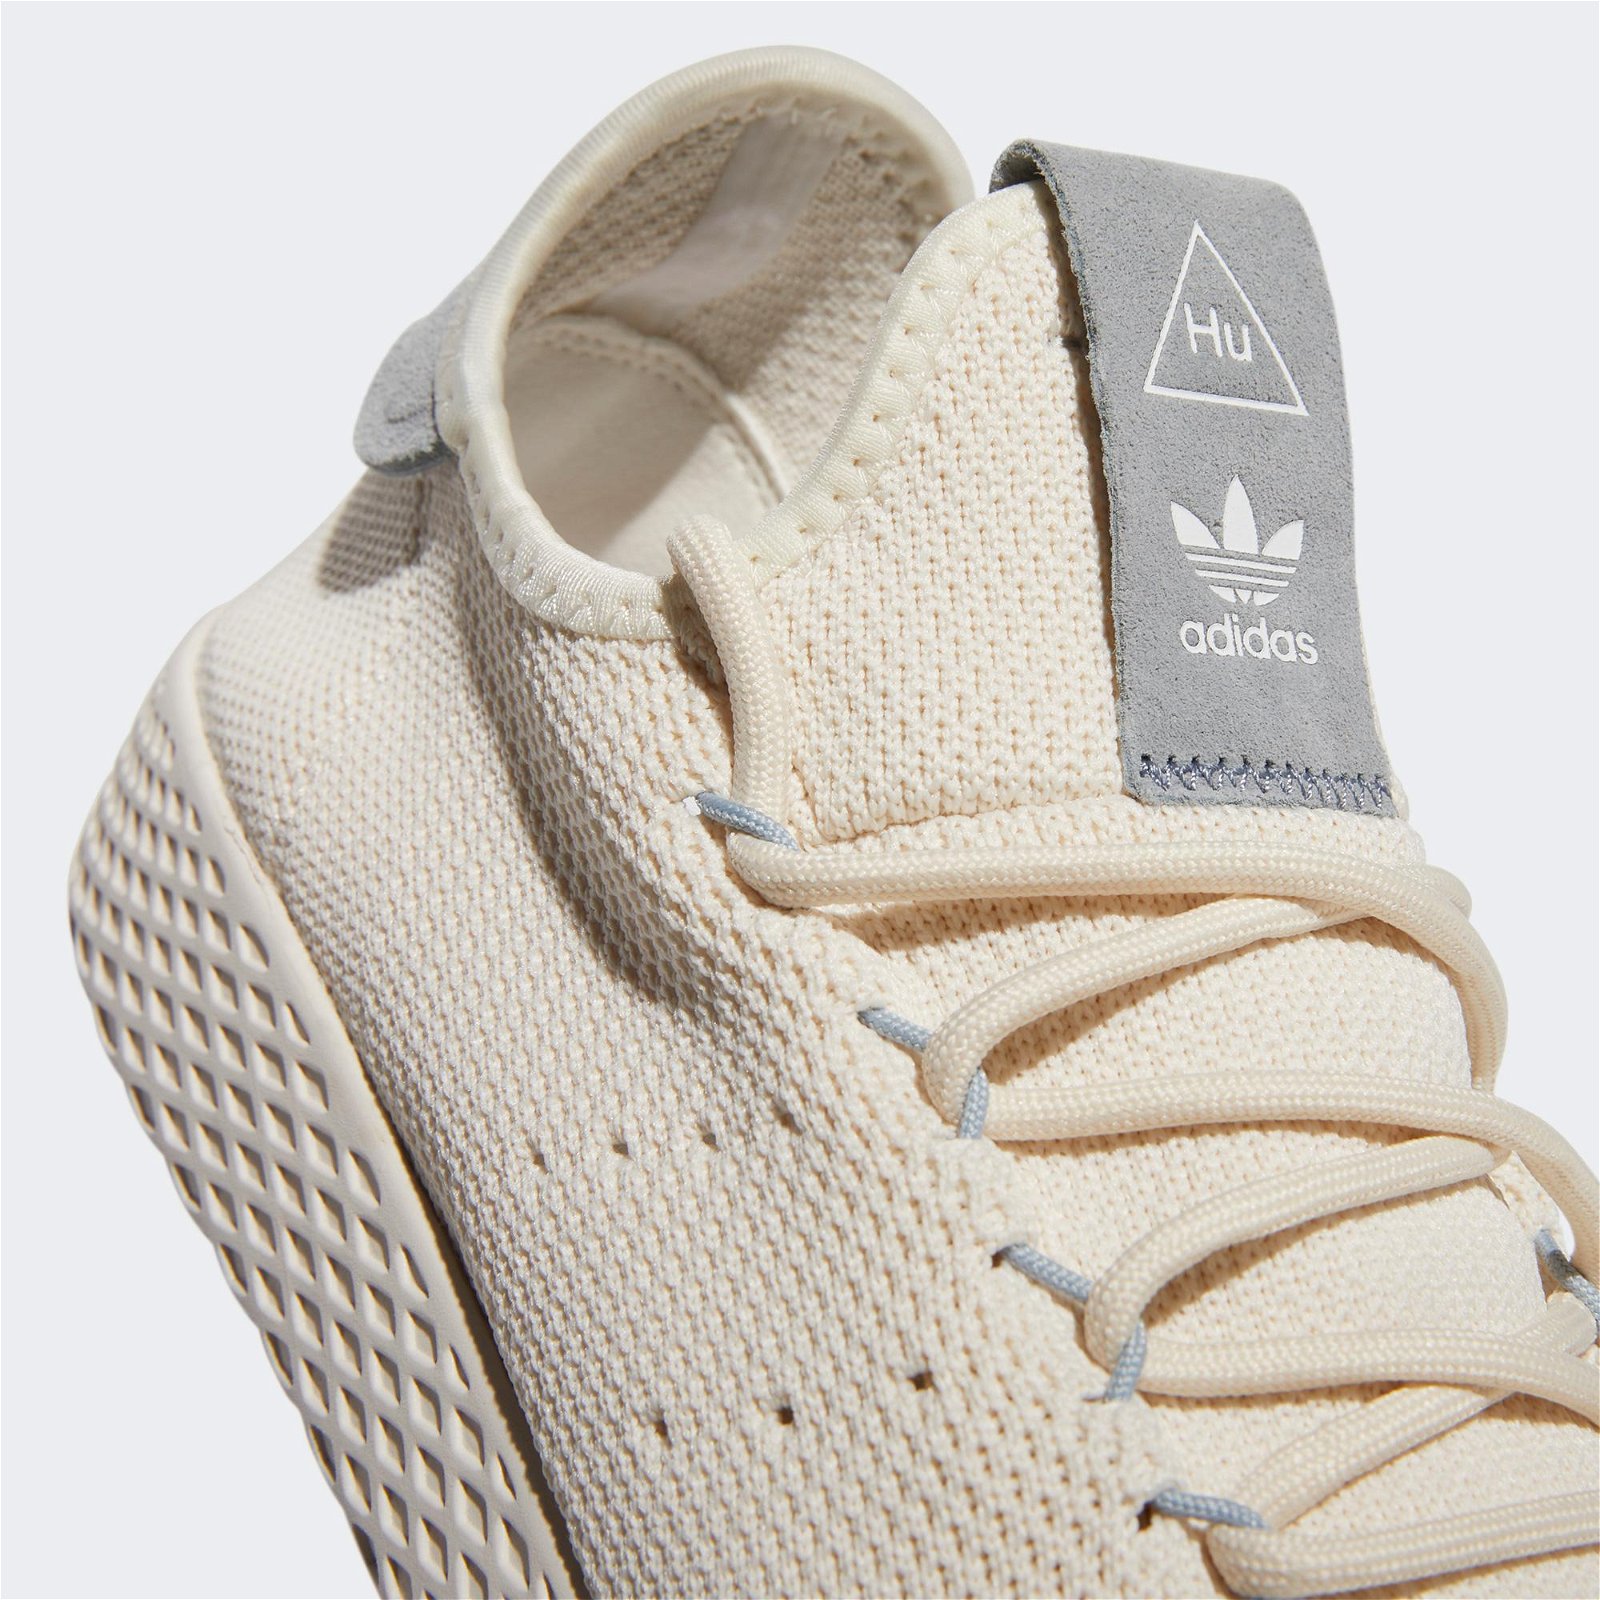 adidas Pharrell Williams Tennis Hu Unisex Beyaz Spor Ayakkabı